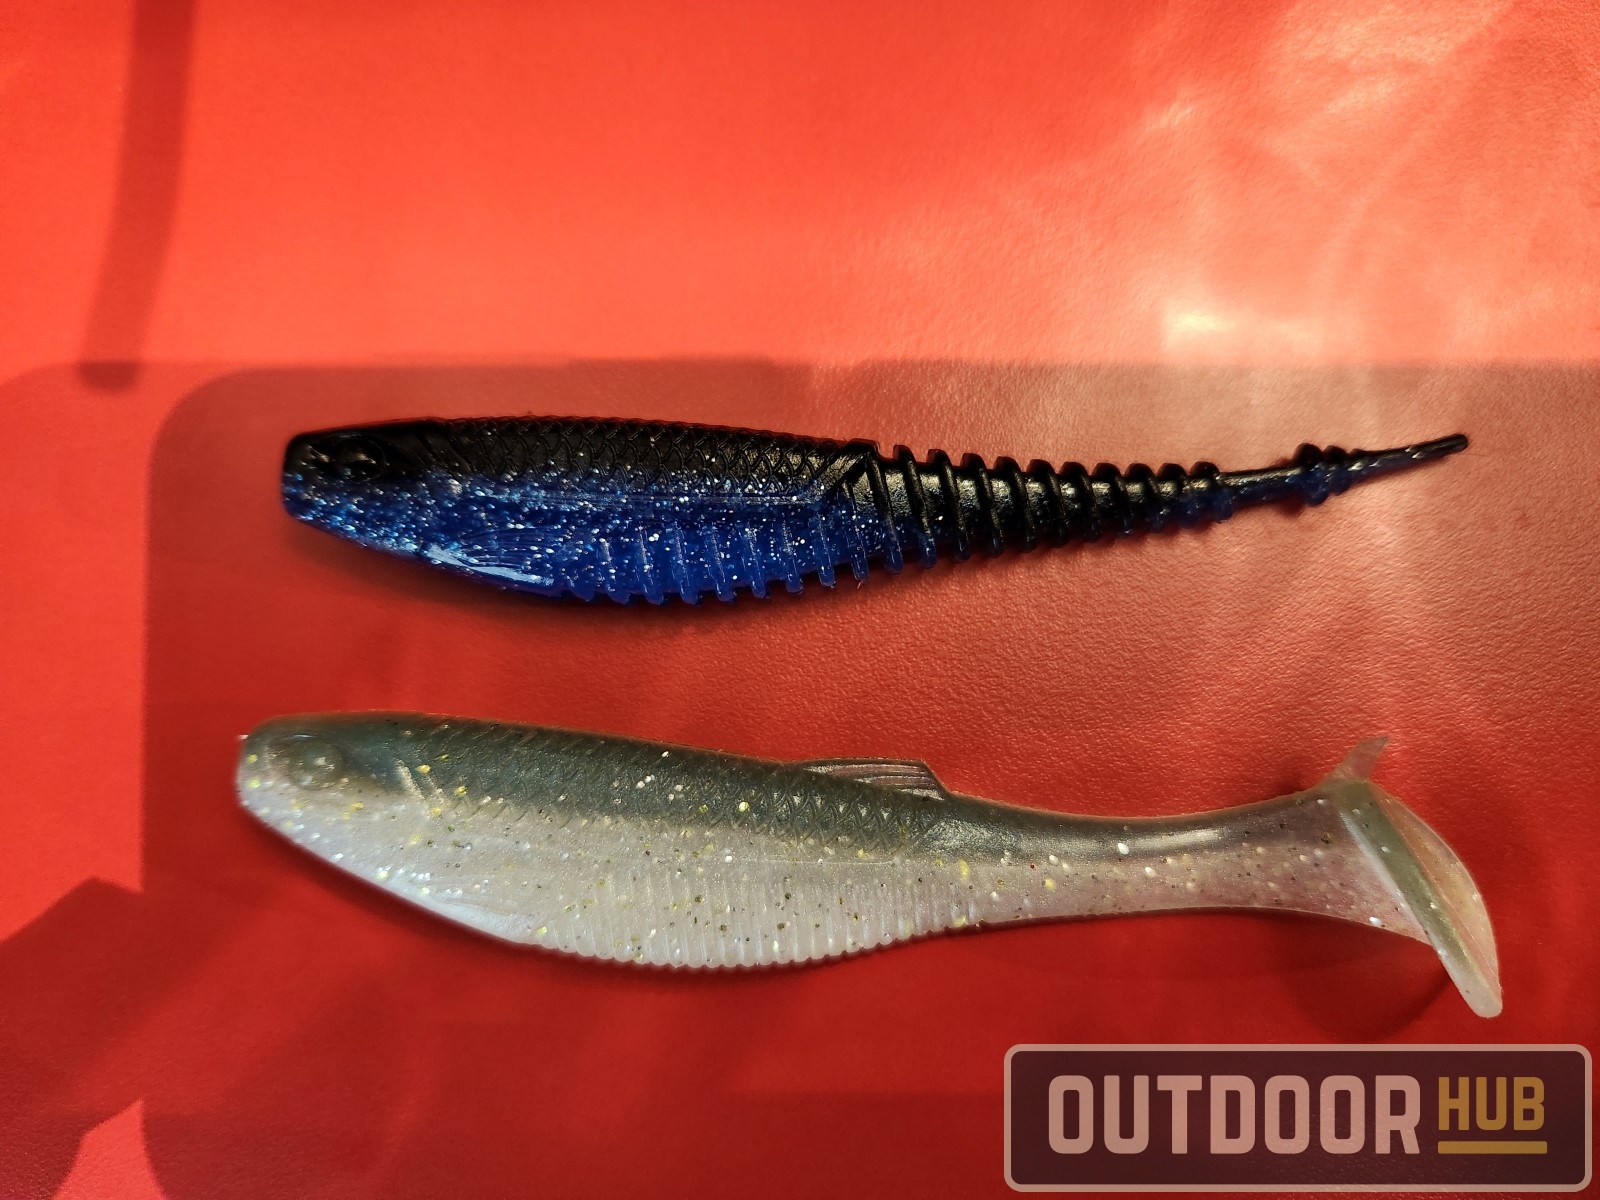 Gardiner Fisheries - RAPALA® New Crushcity™ Soft Baits